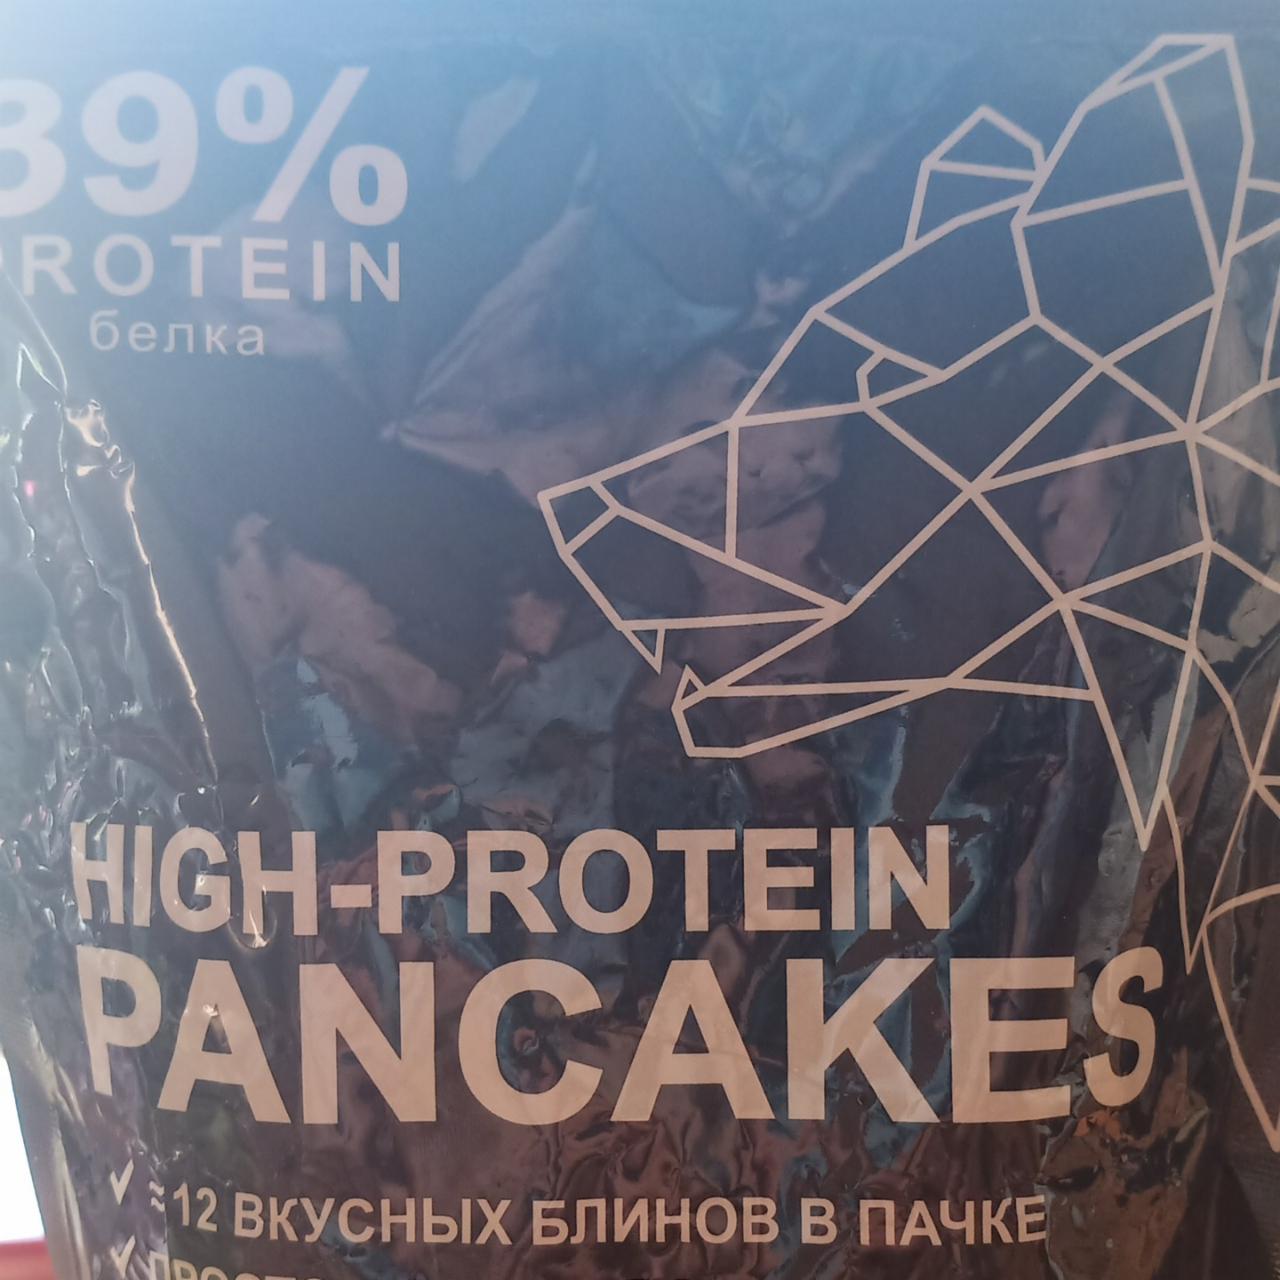 Фото - Смесь для высокобелковых блинов Гречишные со льном 38% protein high protein pancakes Иван-поле